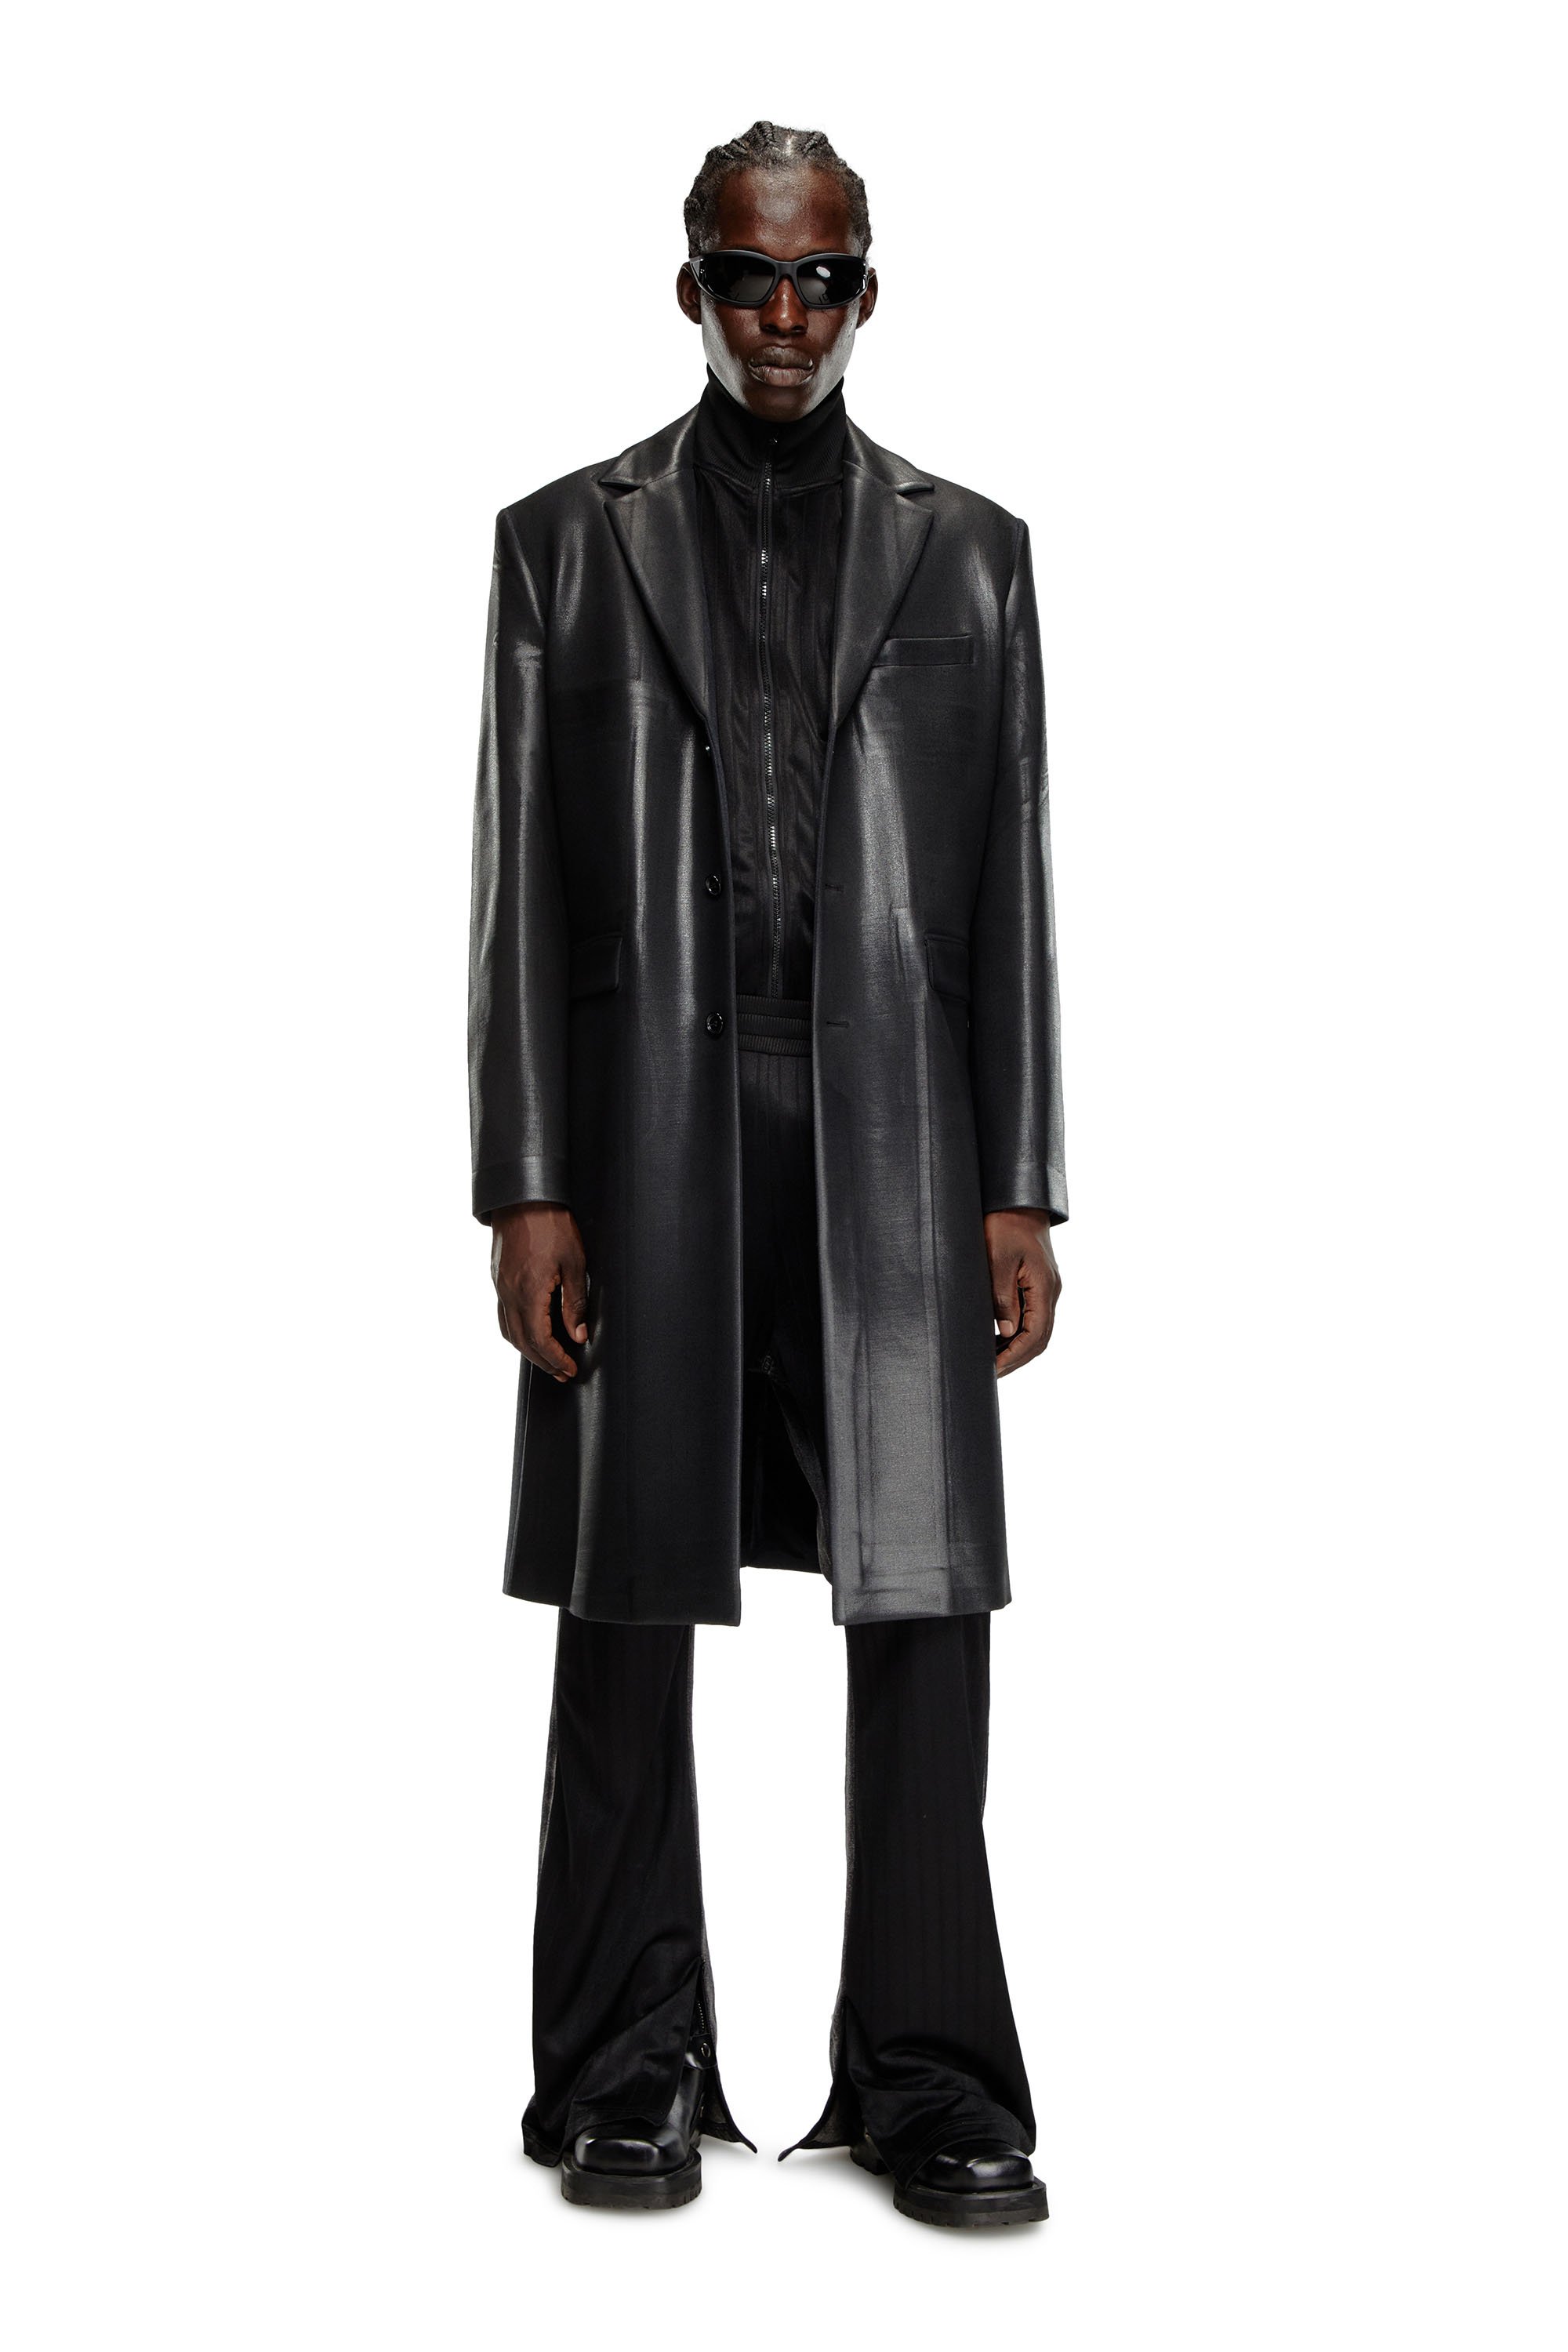 Diesel - J-DENNER, Male Coat in pinstriped cool wool in Black - Image 2